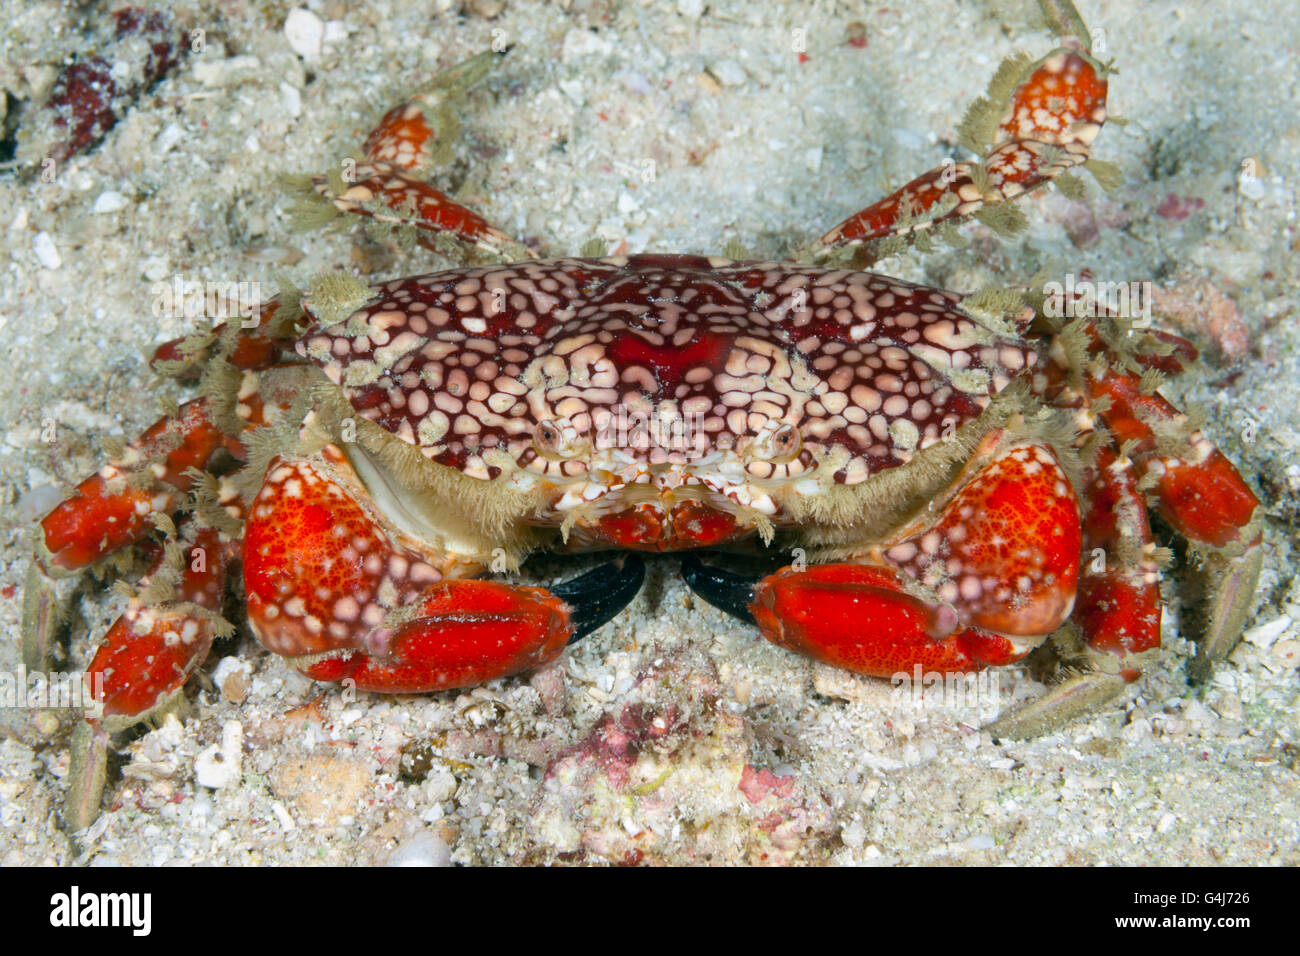 Splendid Round Crab, Etisus sp., Raja Ampat, West Papua, Indonesia Stock Photo